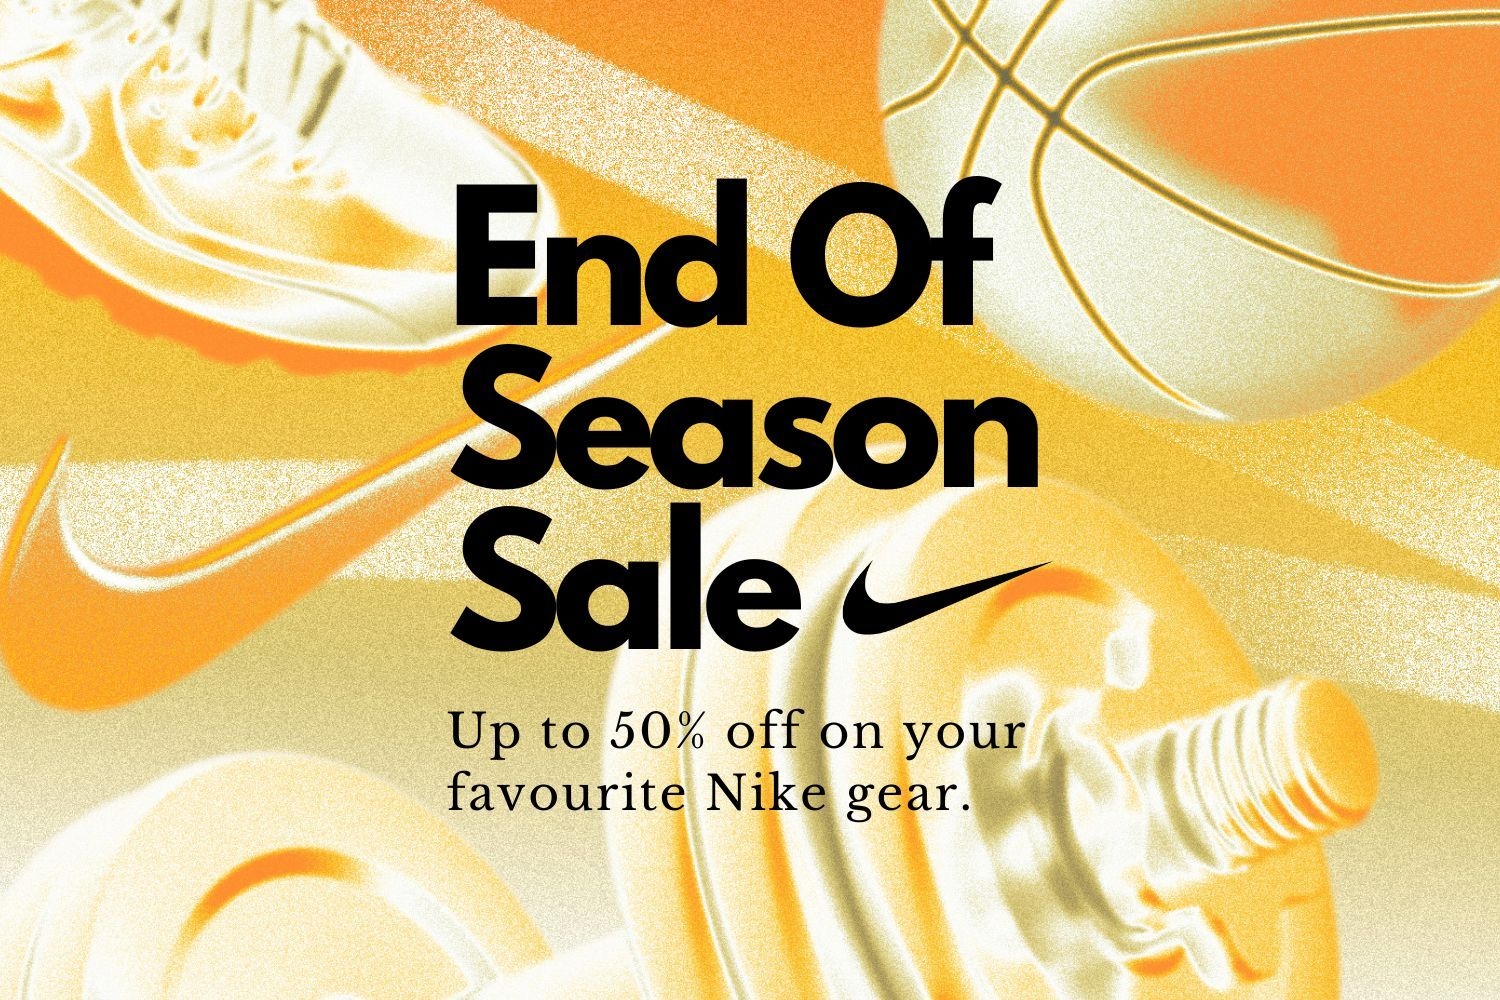 Profitiere von 50% Rabatt im Nike End of Season Sale